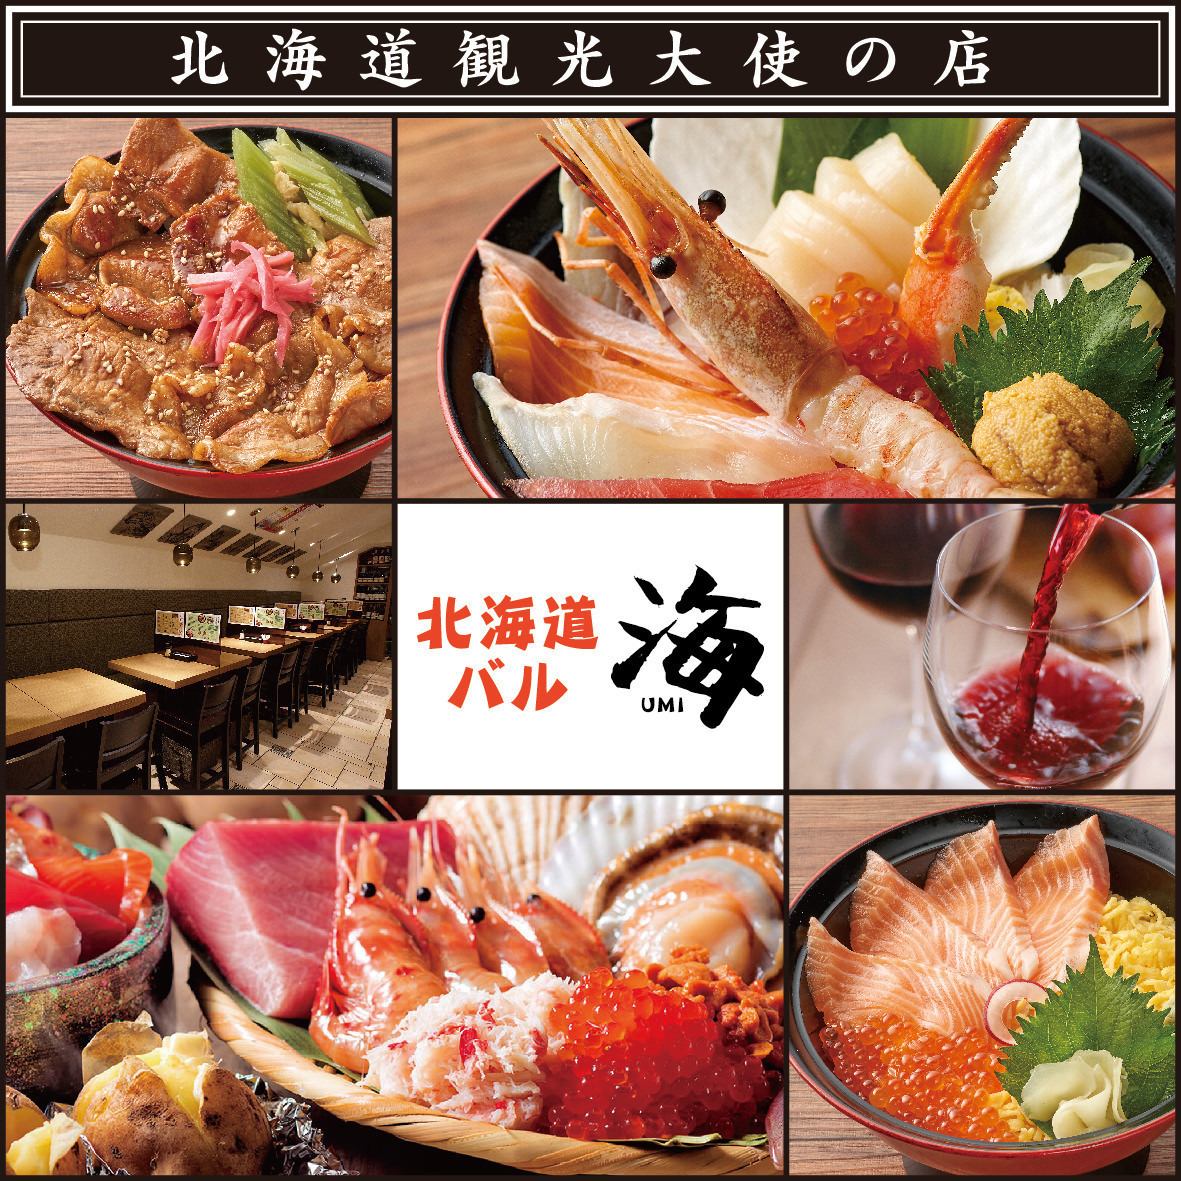 我們特別注重新鮮度和品質，您可以以合理的價格享用北海道的食材。